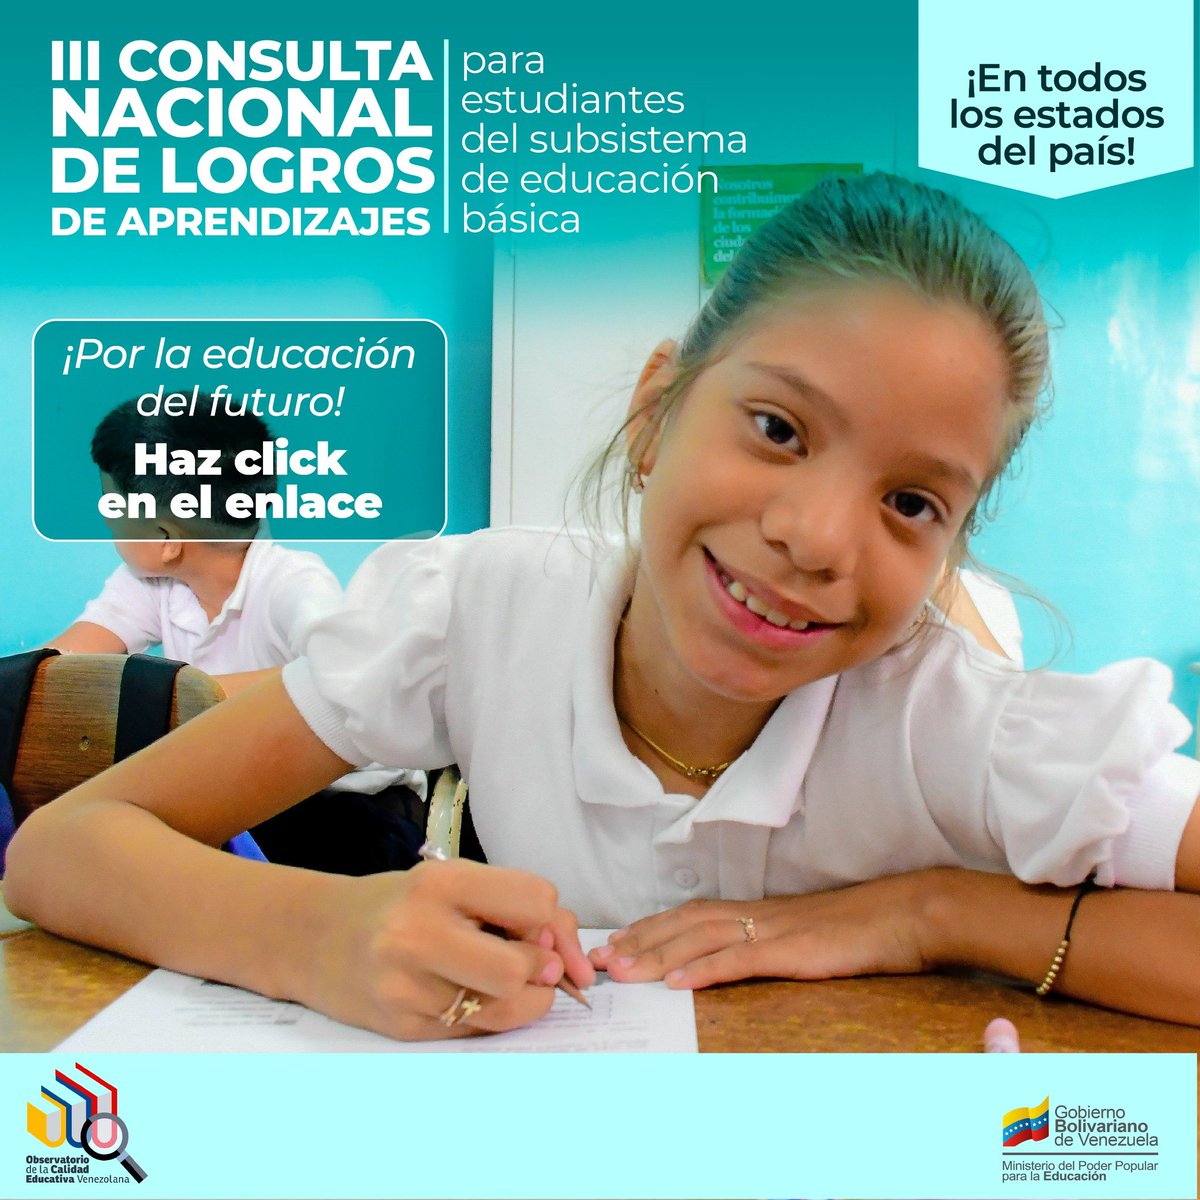 ¡CALIDAD EDUCATIVA! Desde cada institución educativa del país, se avanza con el Objetivo de Desarrollo Sostenible 4. III Consulta Nacional de Logros de Aprendizaje. Haz clic aquí: instagram.com/p/C6cauALtcOb/ #BidenLevantaLasSancionesYa @NicolasMaduro @_LaAvanzadora @MPPEDUCACION